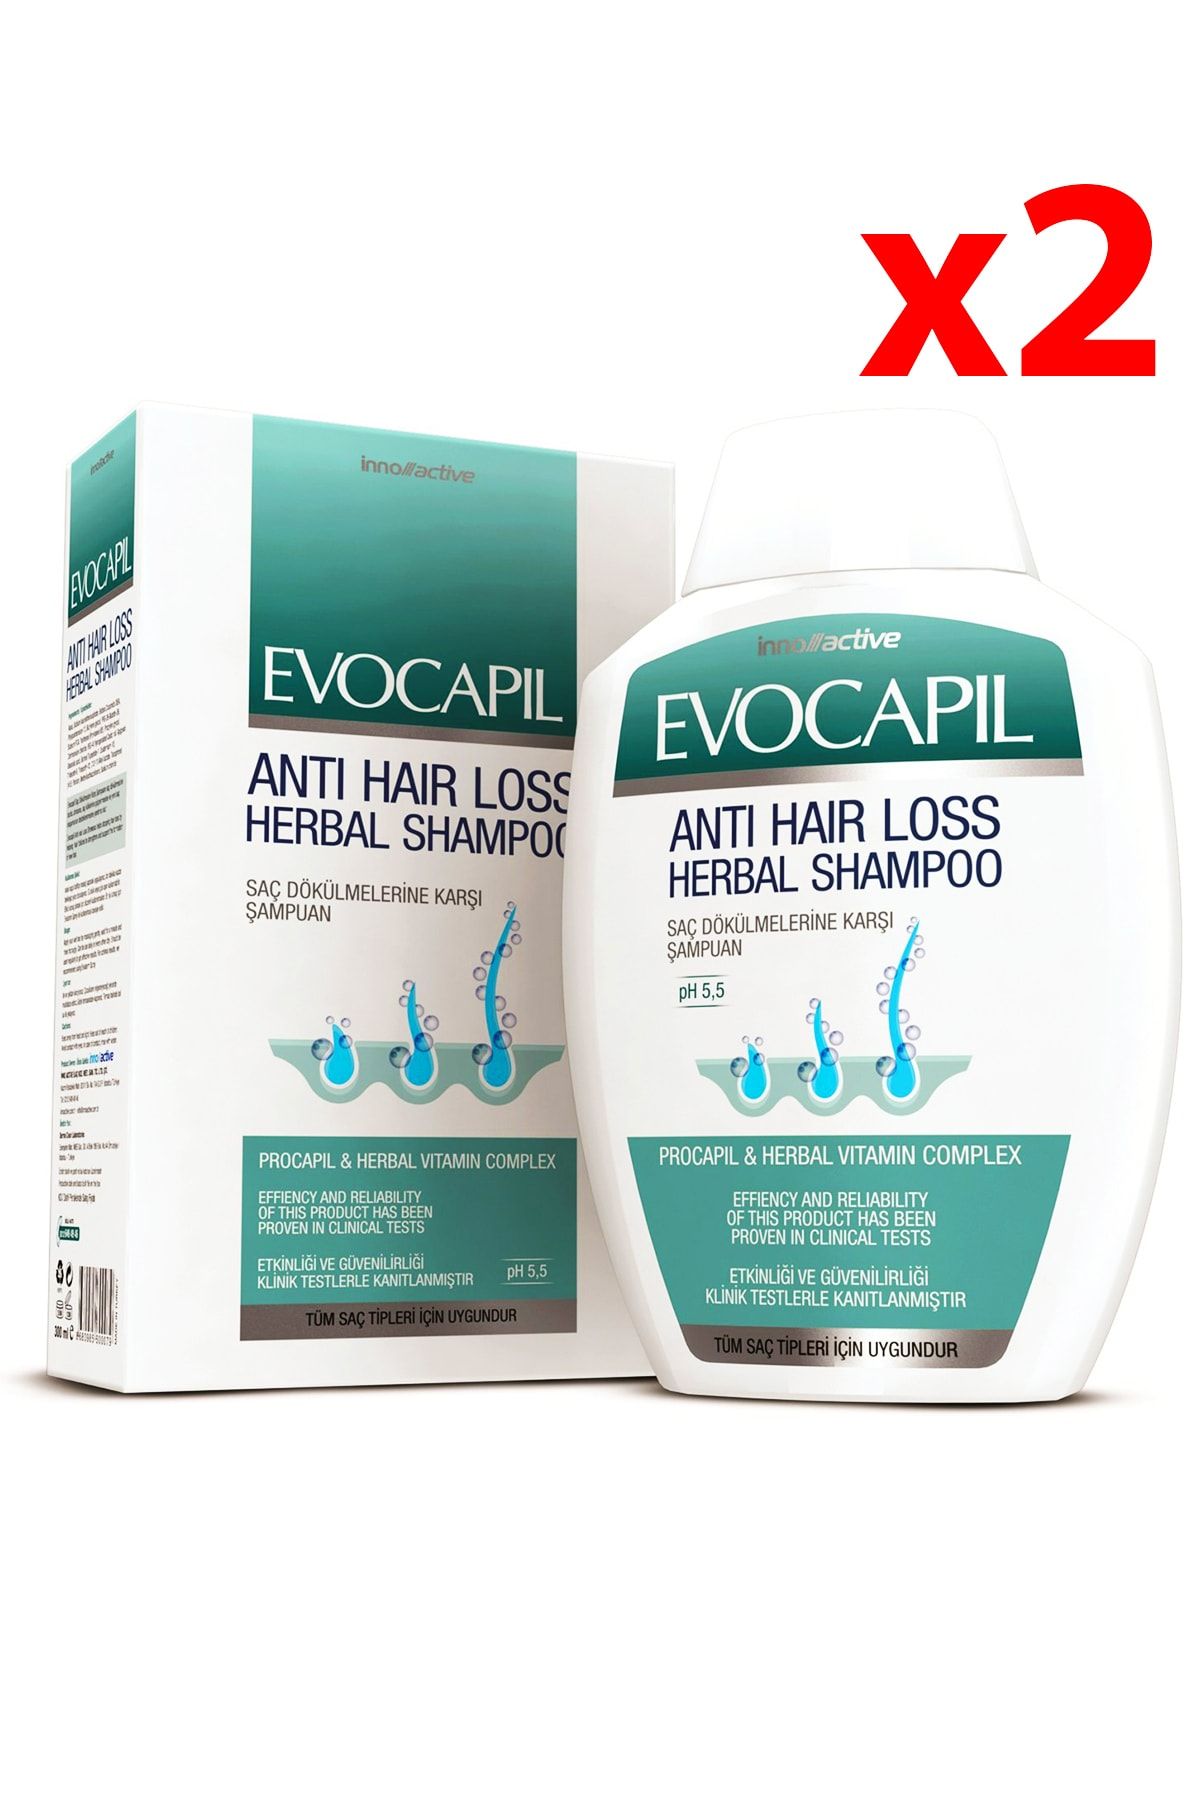 Evocapil Saç Dökülmelerine Karşı Doğal Procapil Şampuan 300ml 2 Adet